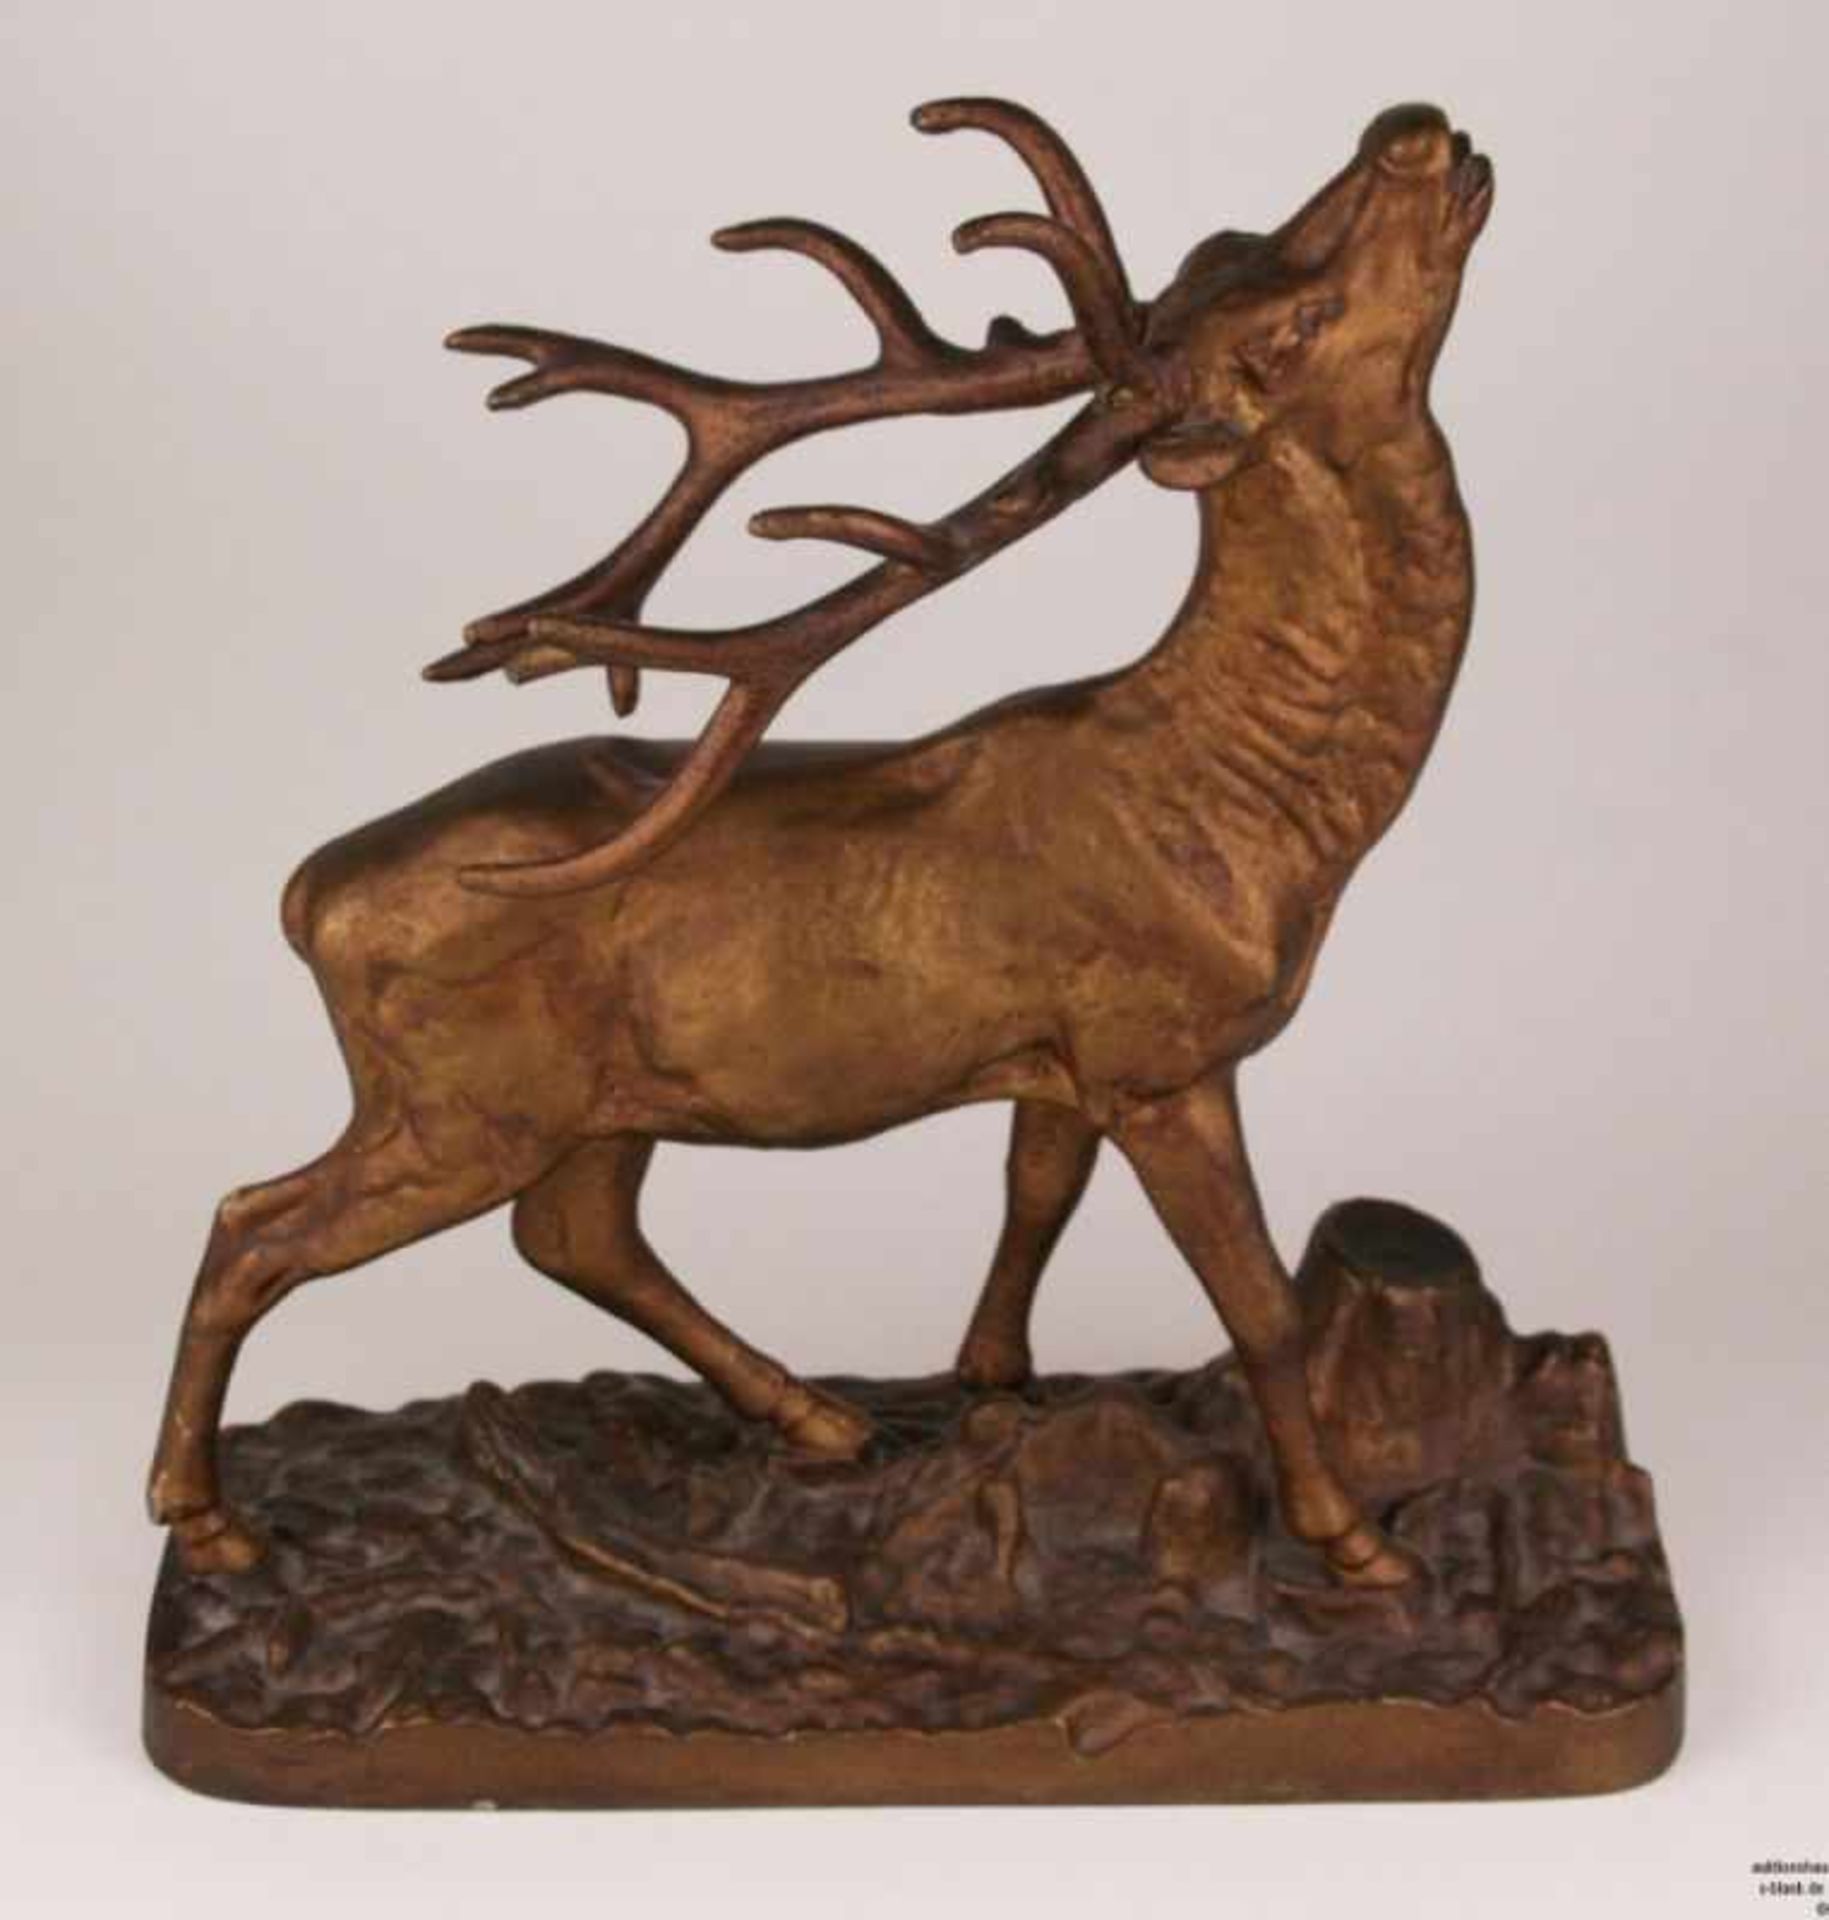 Hirschfigur - Metallguss, bronziert, patiniert, um 1900, naturalistische Ausformung eines